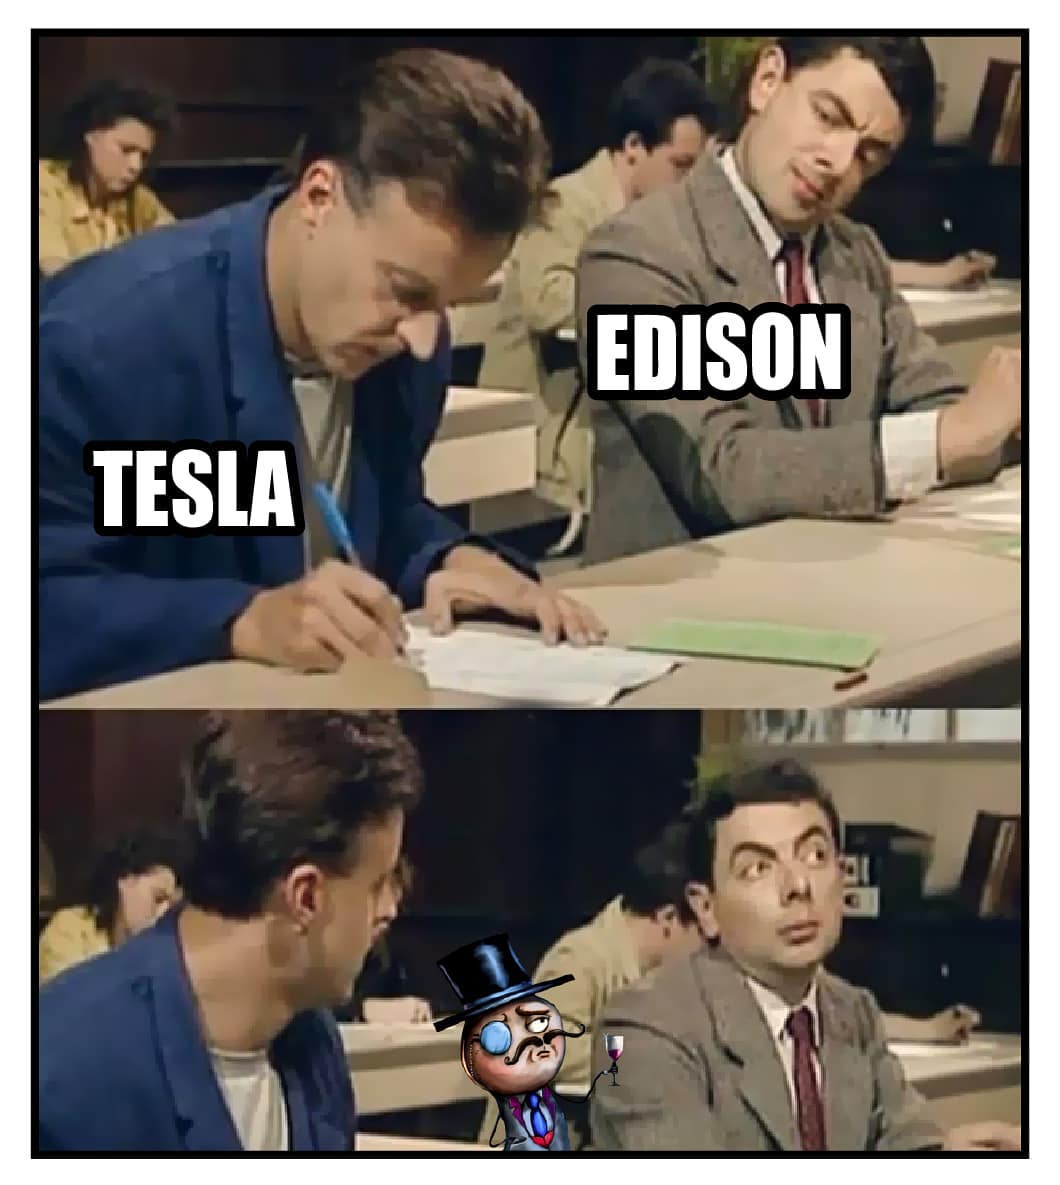 Tesla. Edison.